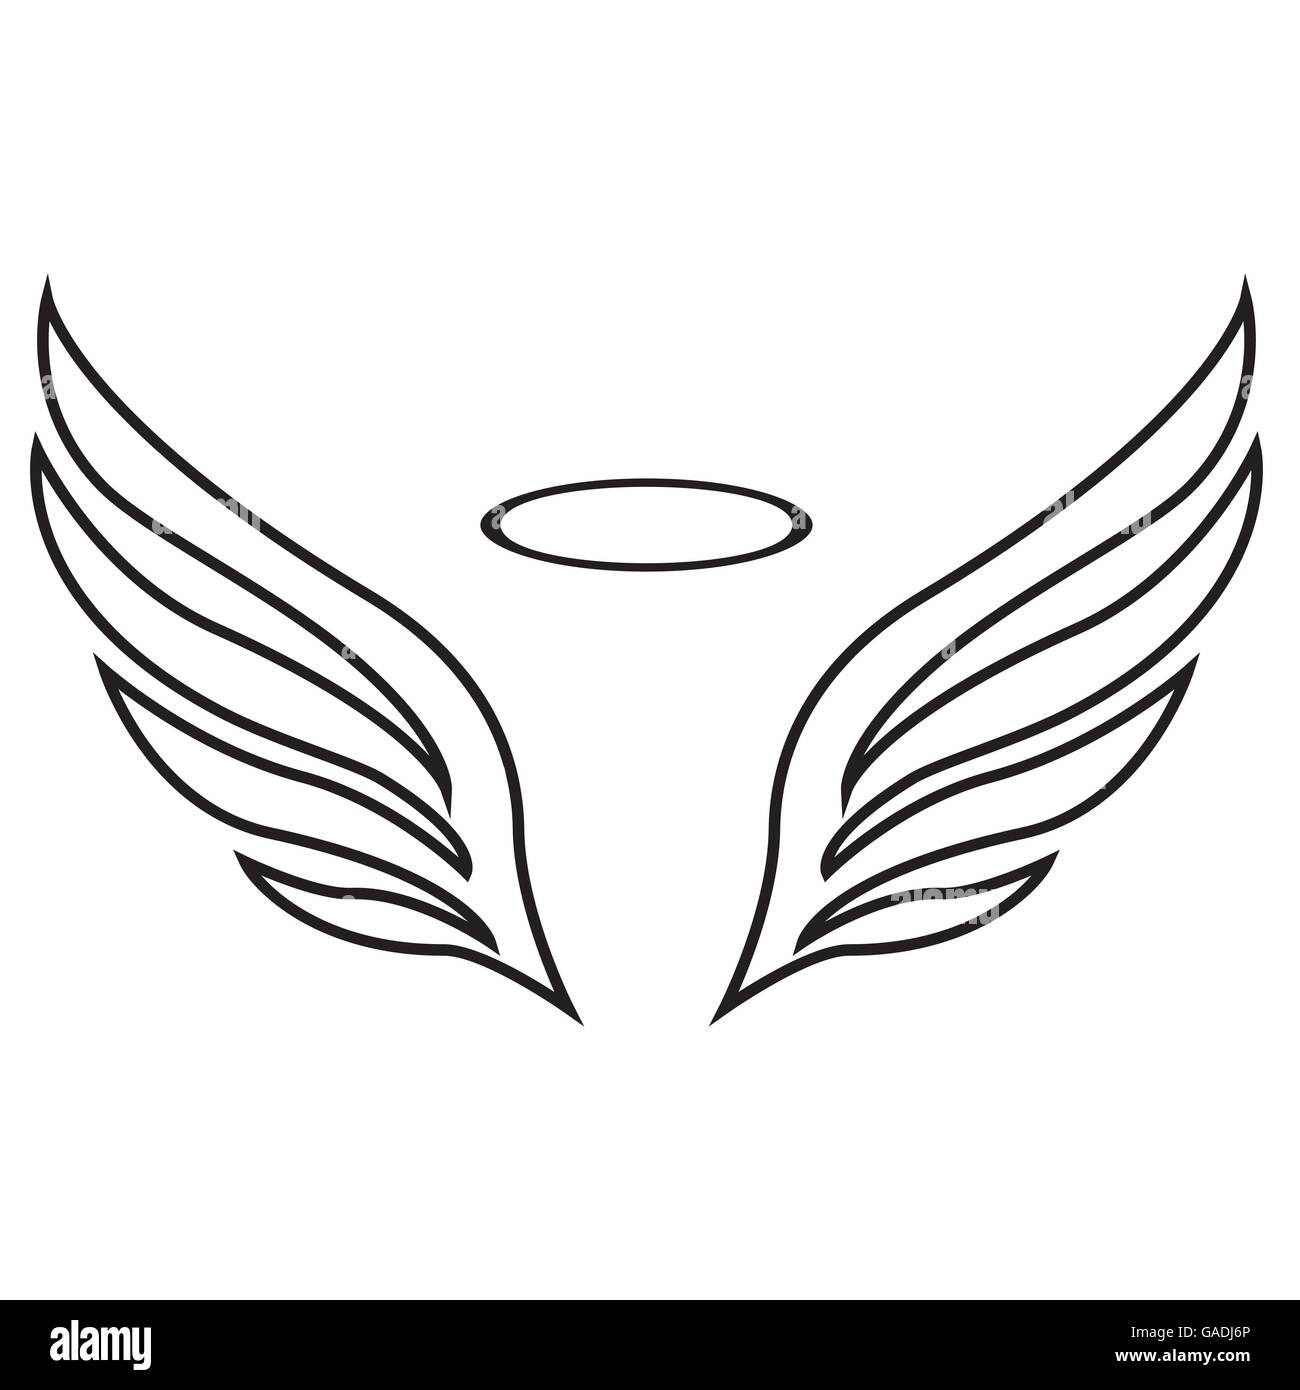 Croquis de vecteur d'ailes d'ange Illustration de Vecteur